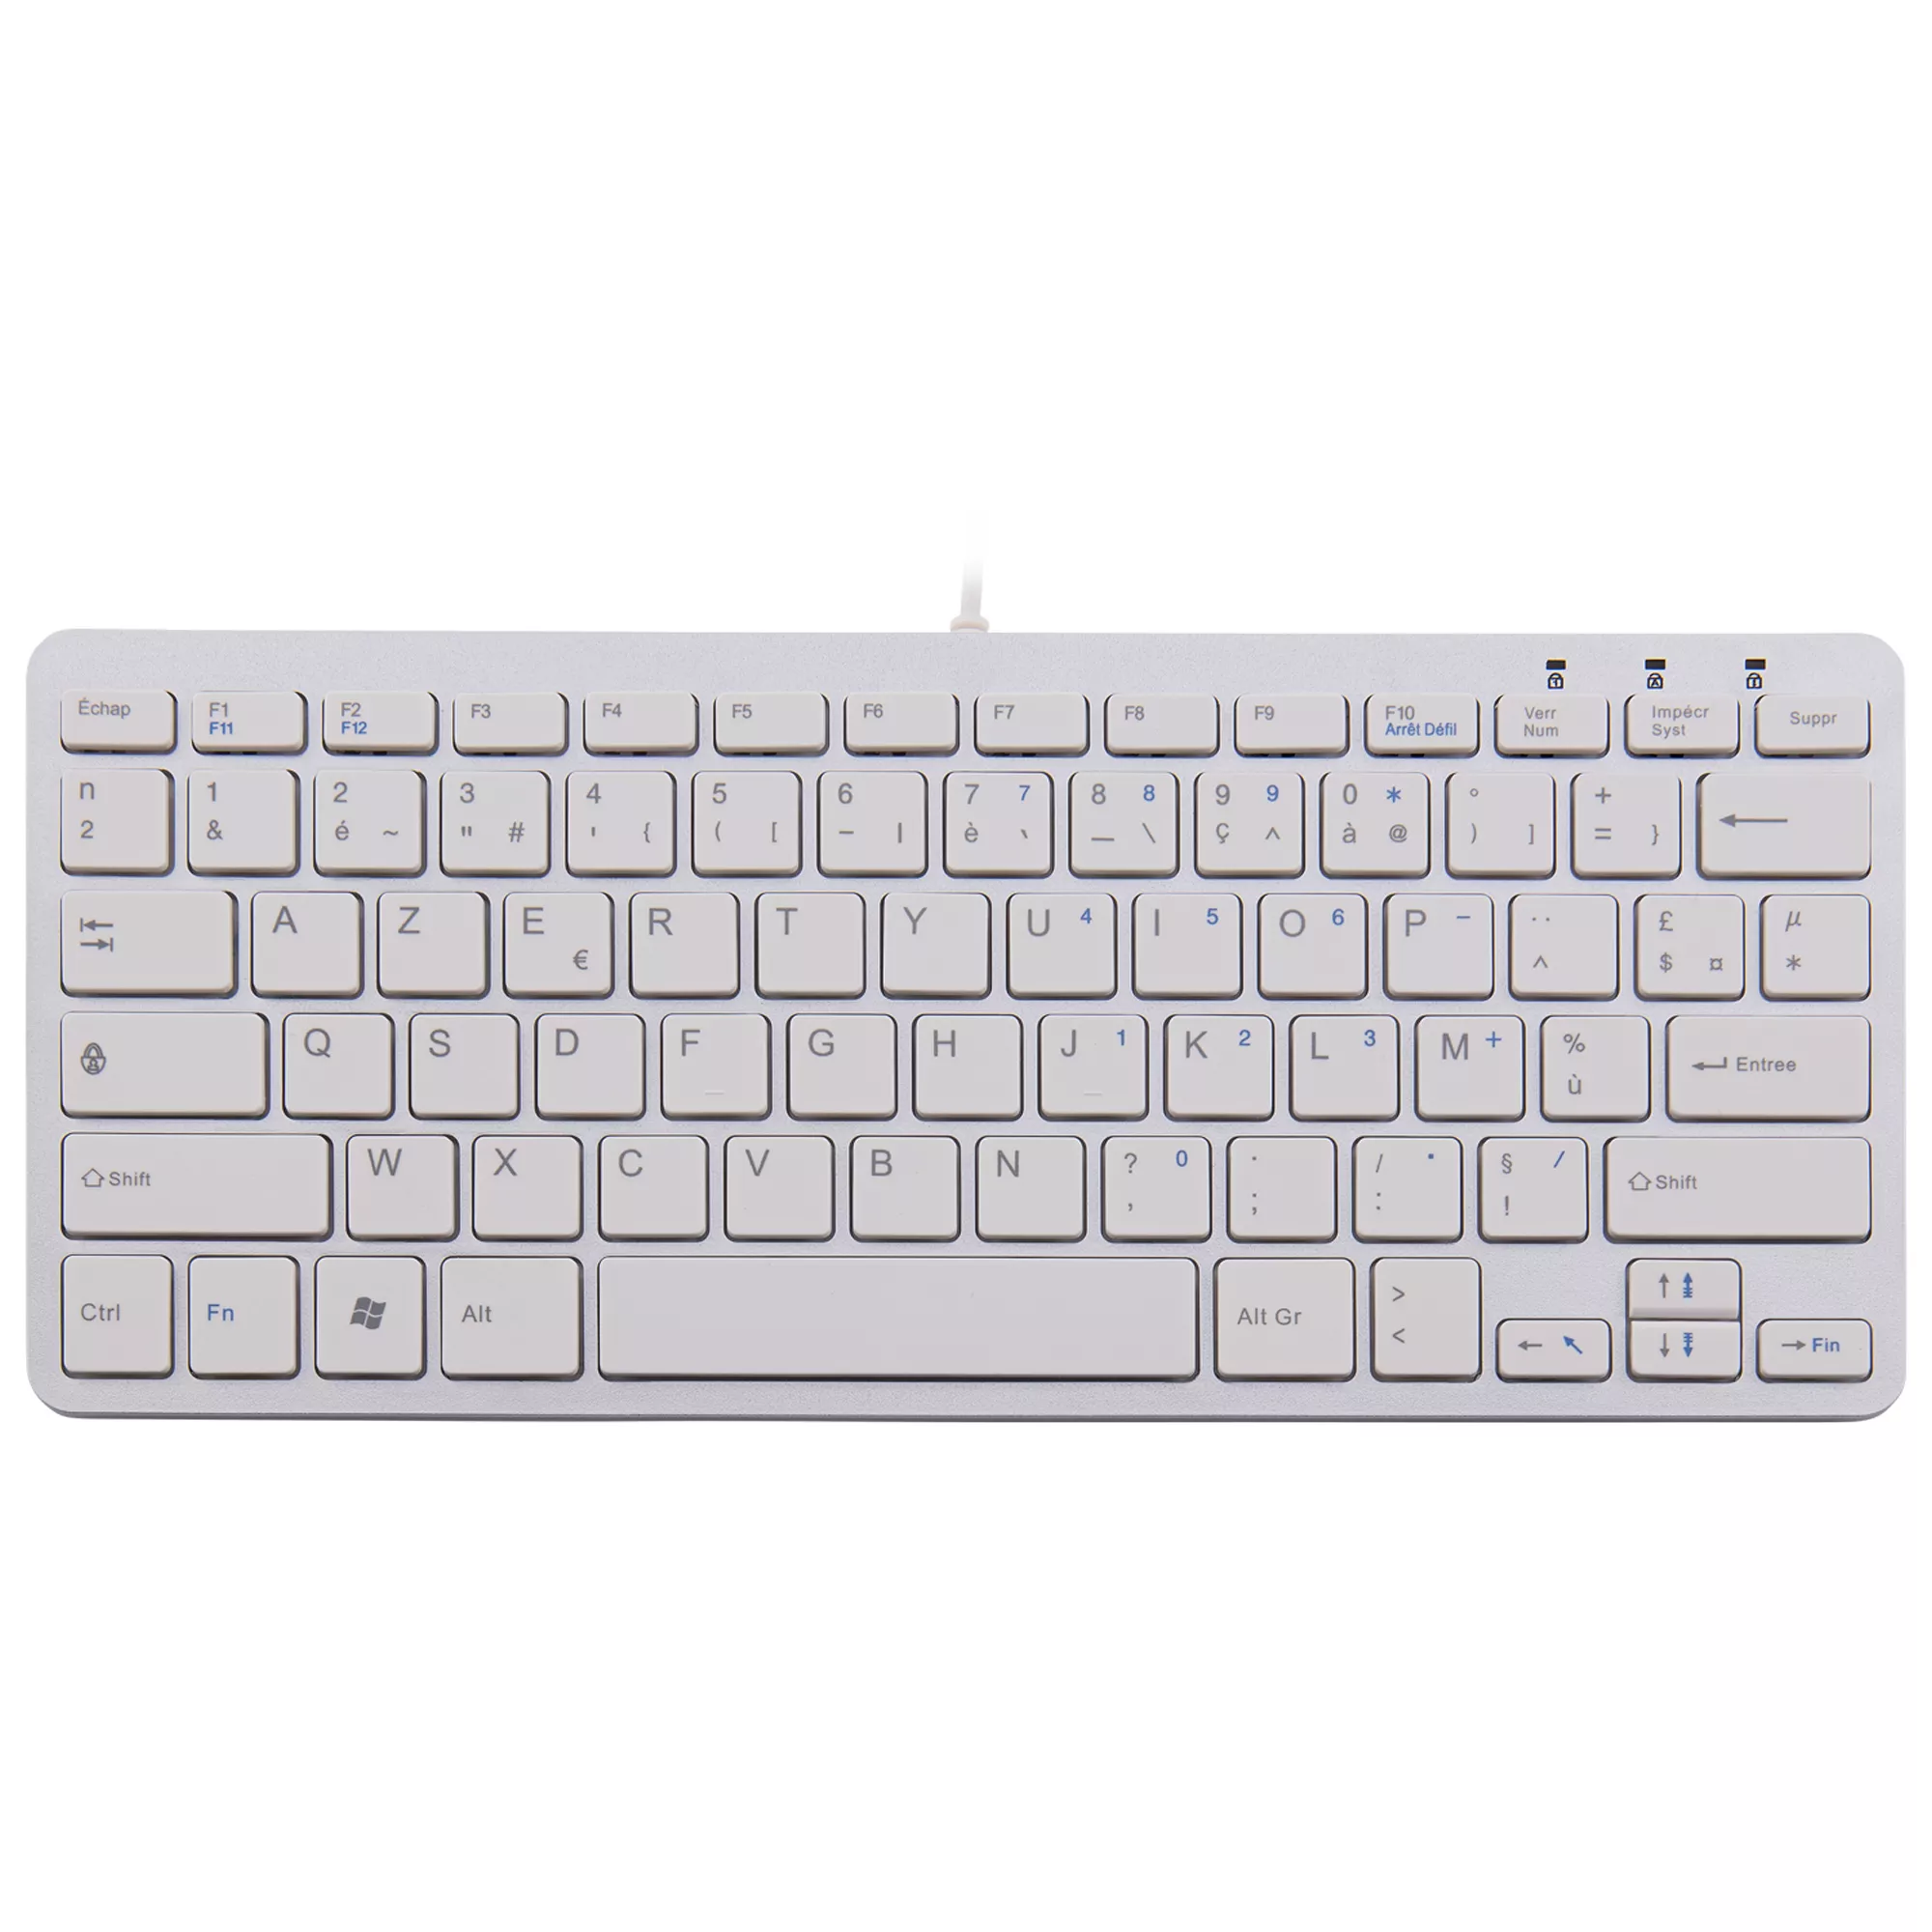 Revendeur officiel R-Go Tools R-Go Compact clavier AZERTY (FR), filaire, blanc